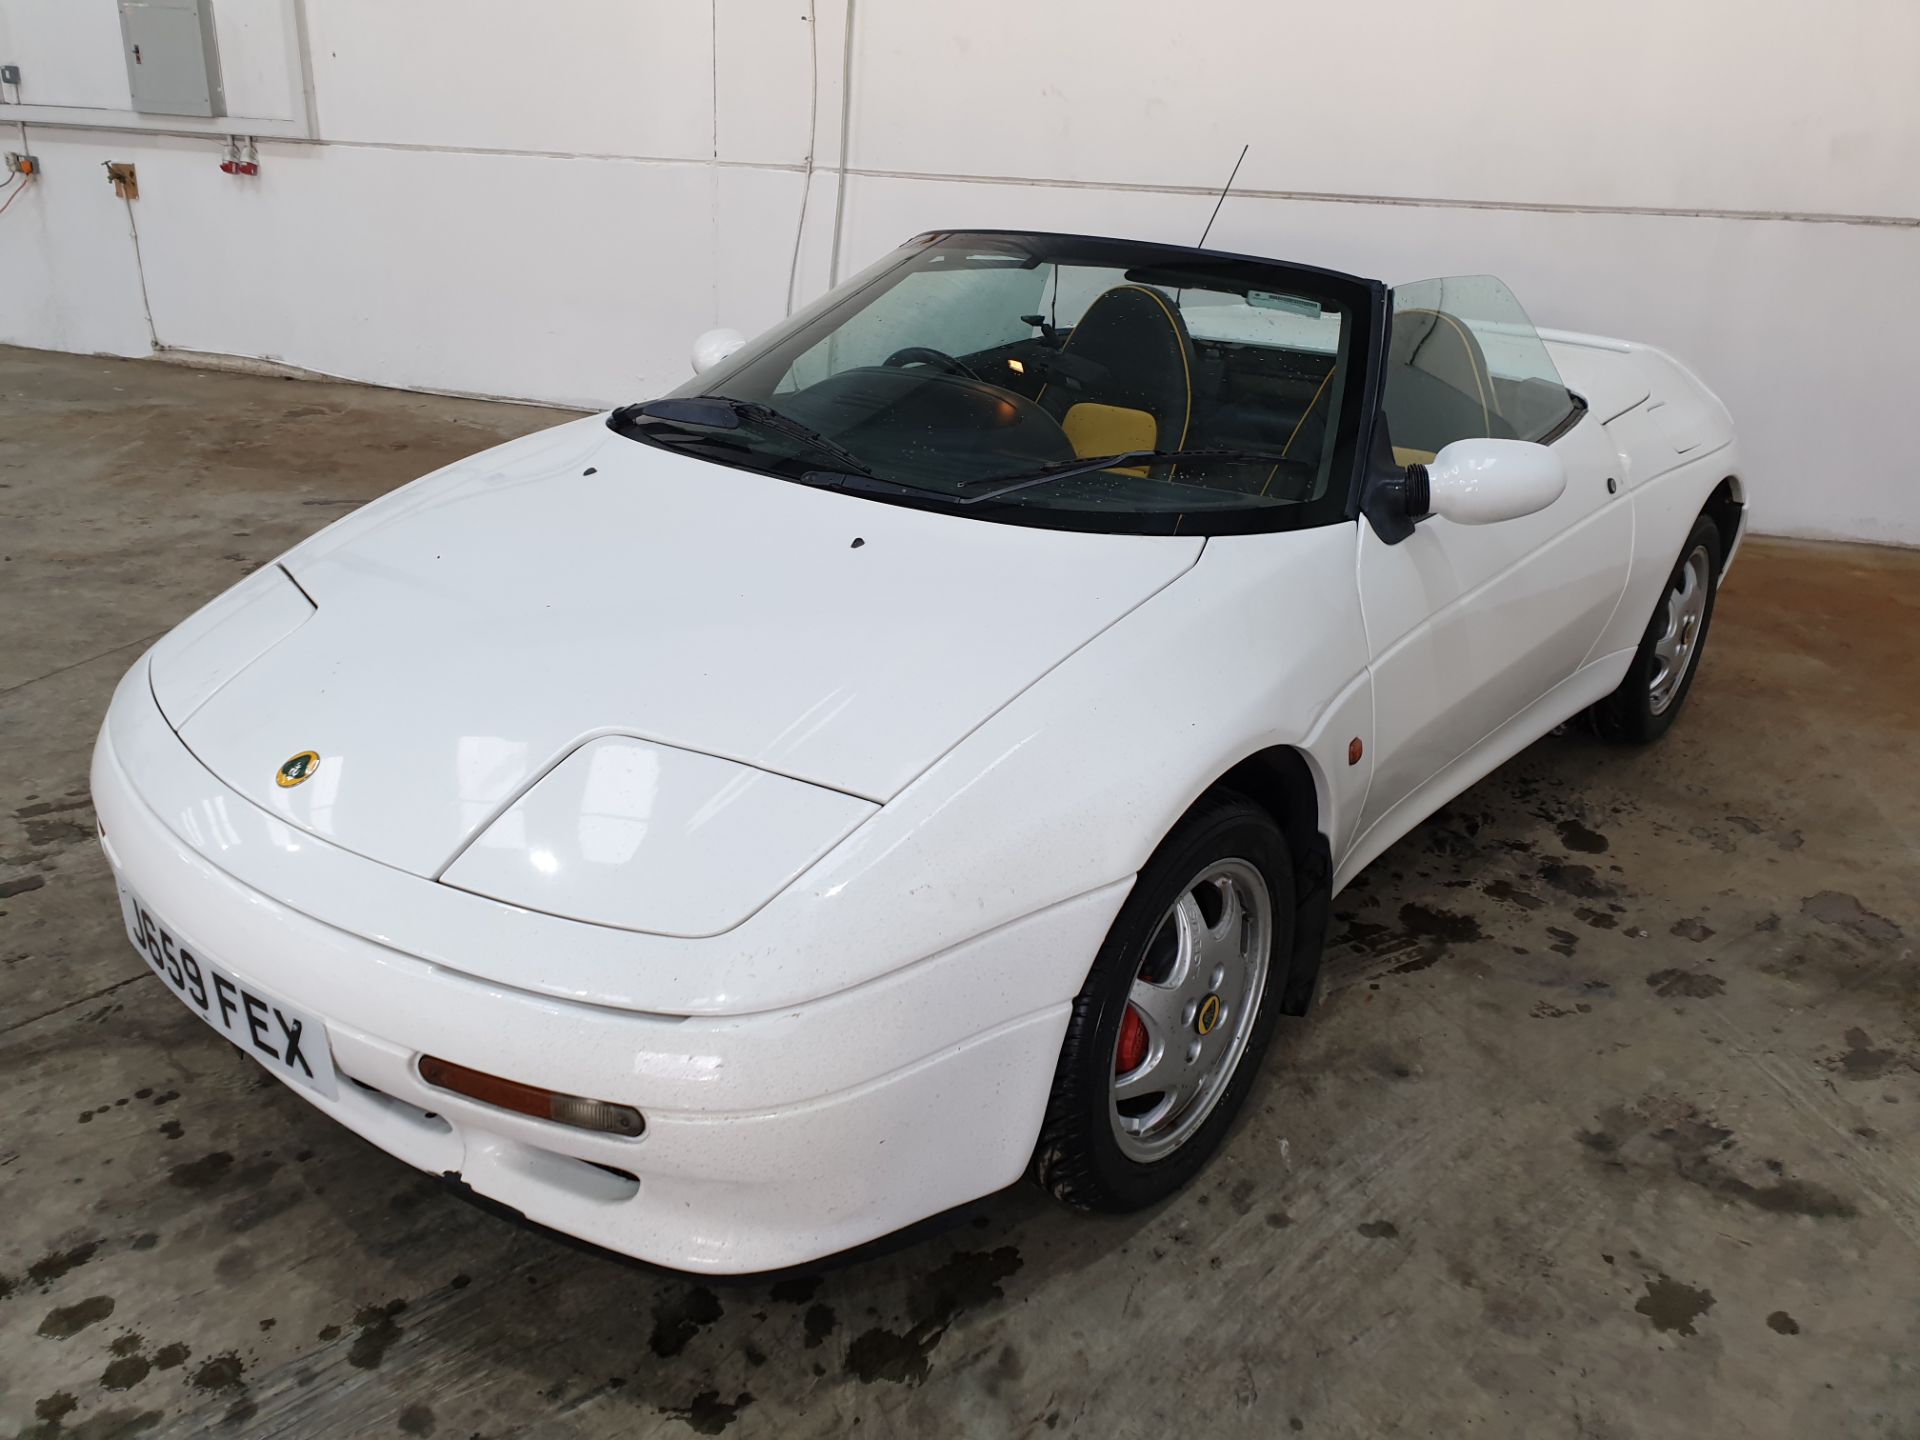 1991 Lotus Elan Turbo - Image 7 of 11